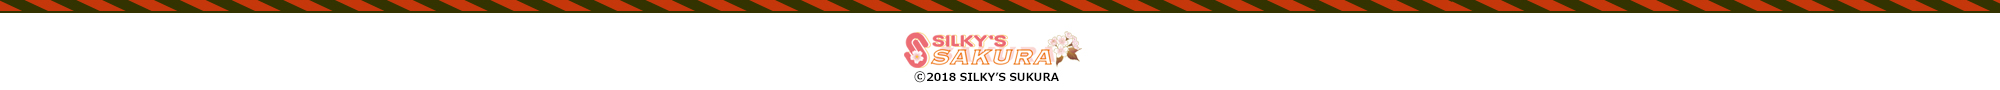 (c) 2018 SILKY'S SAKURA